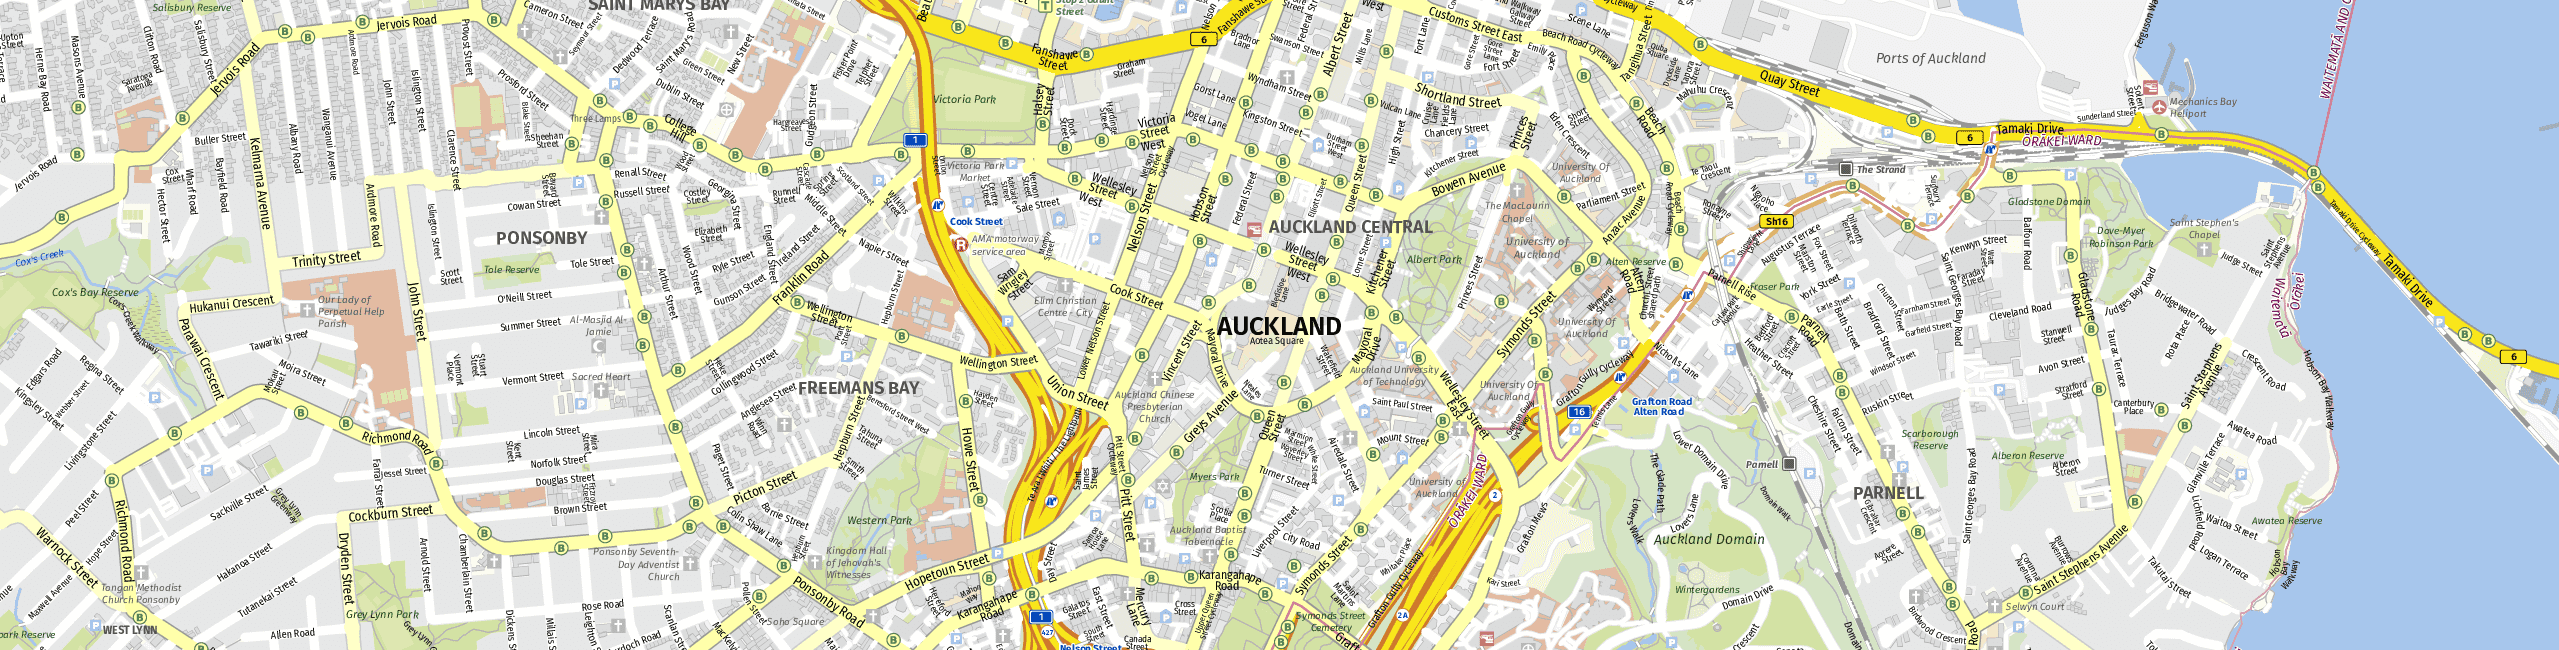 Stadtplan Auckland zum Downloaden.